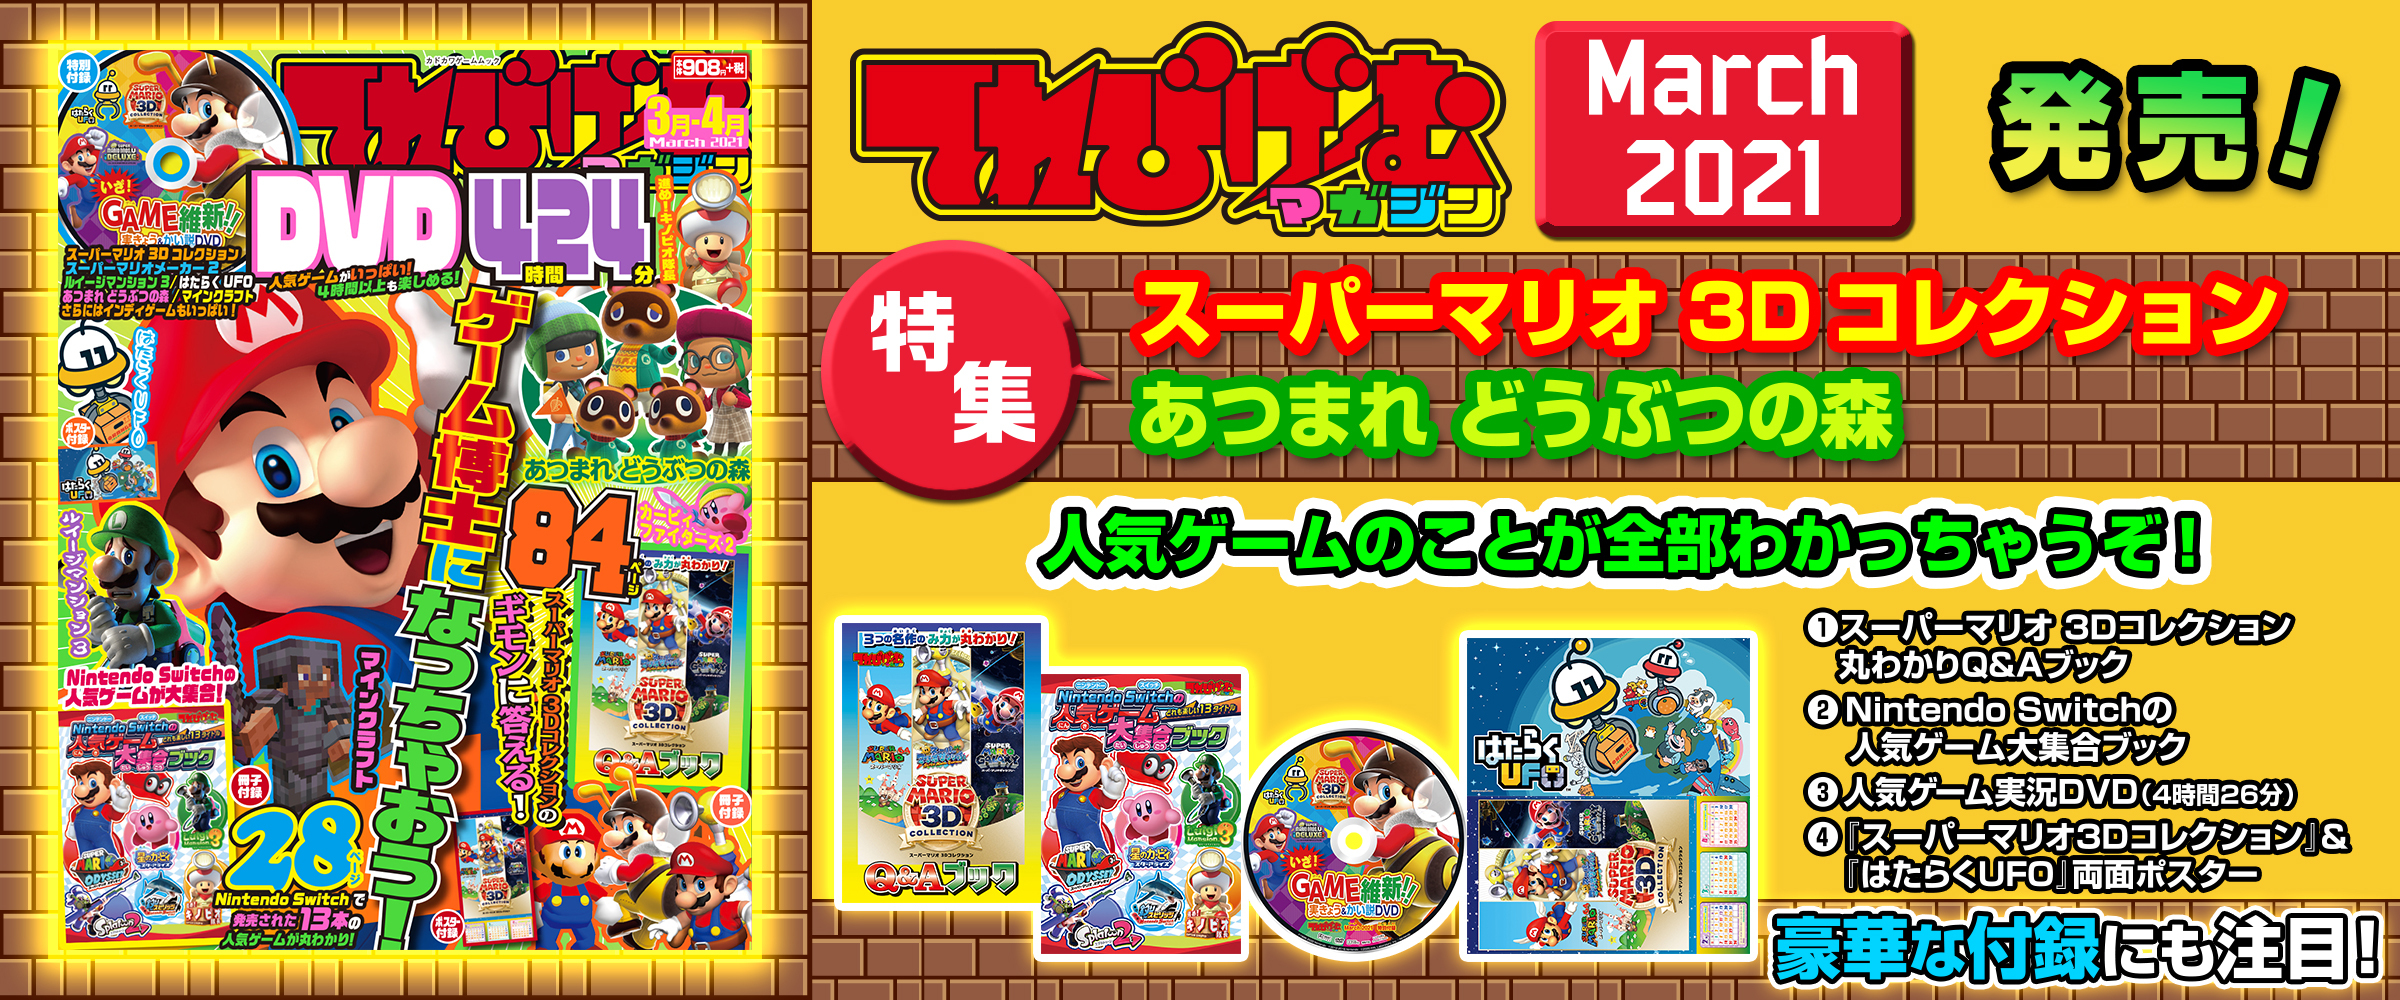 新作通販サイト マリオメーカー2マリオオデッセイ set売り - テレビゲーム